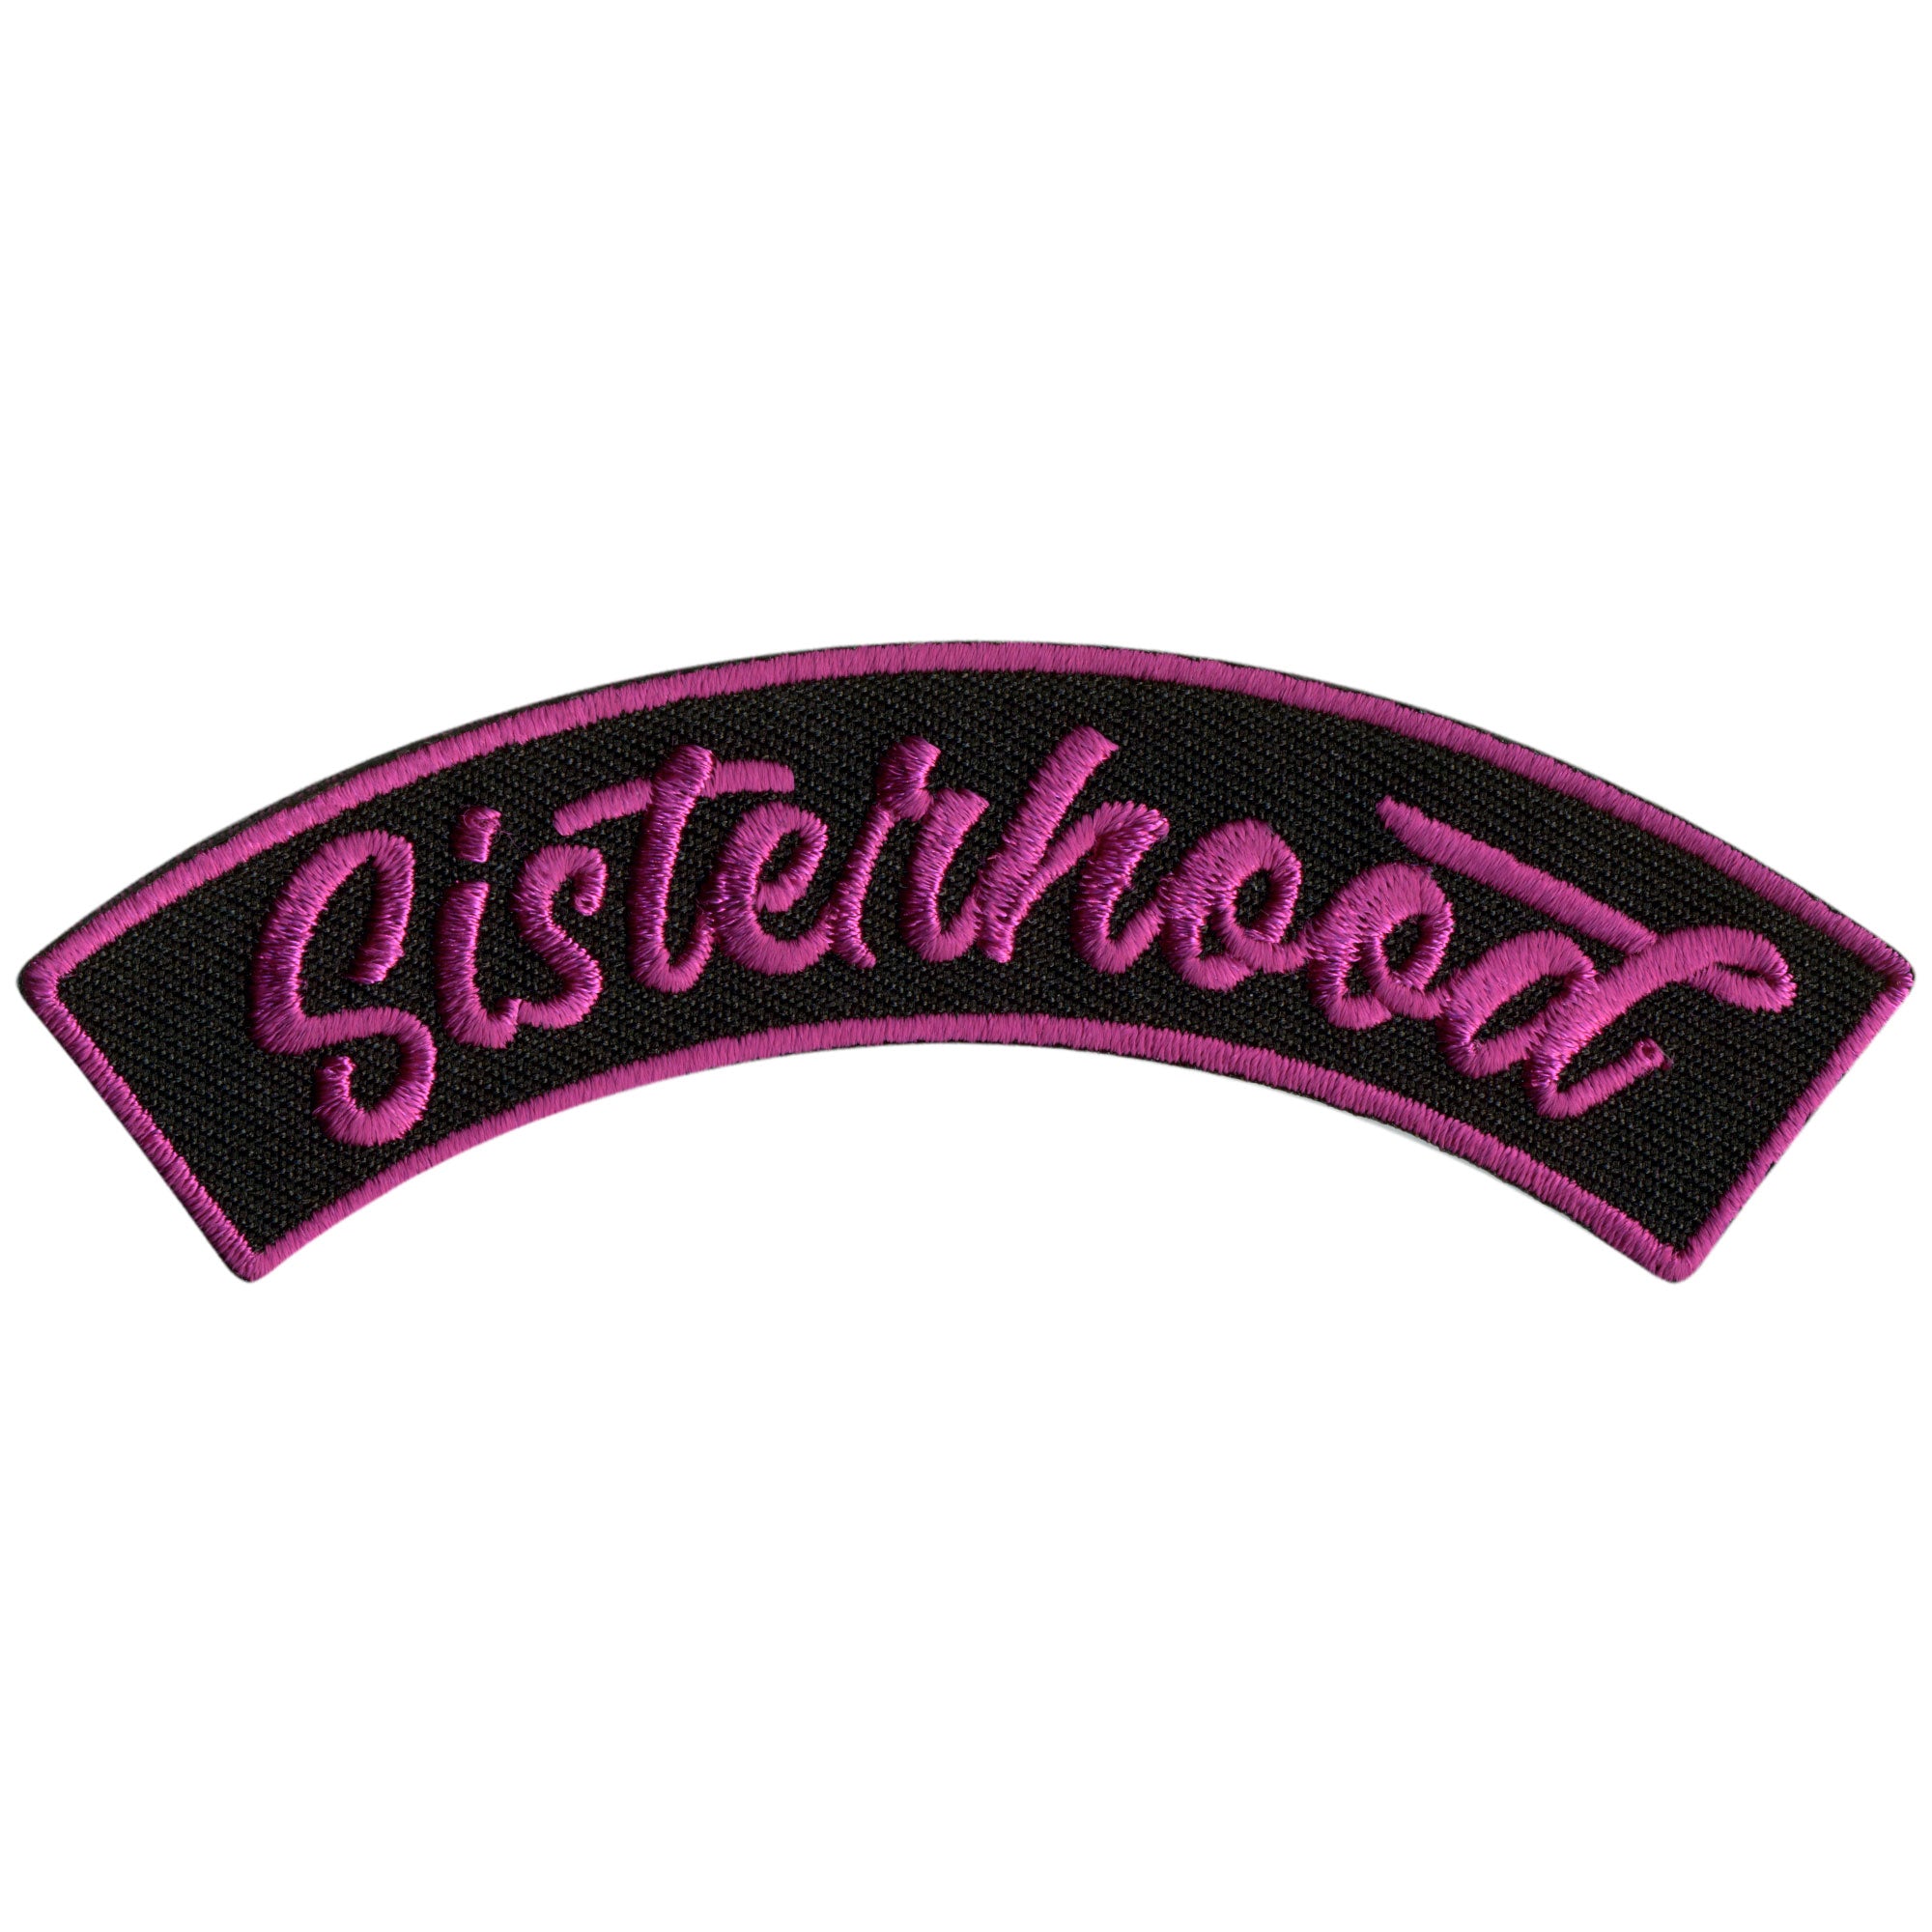 Hot Leathers Sisterhood 4” X 1” Top Rocker Patch